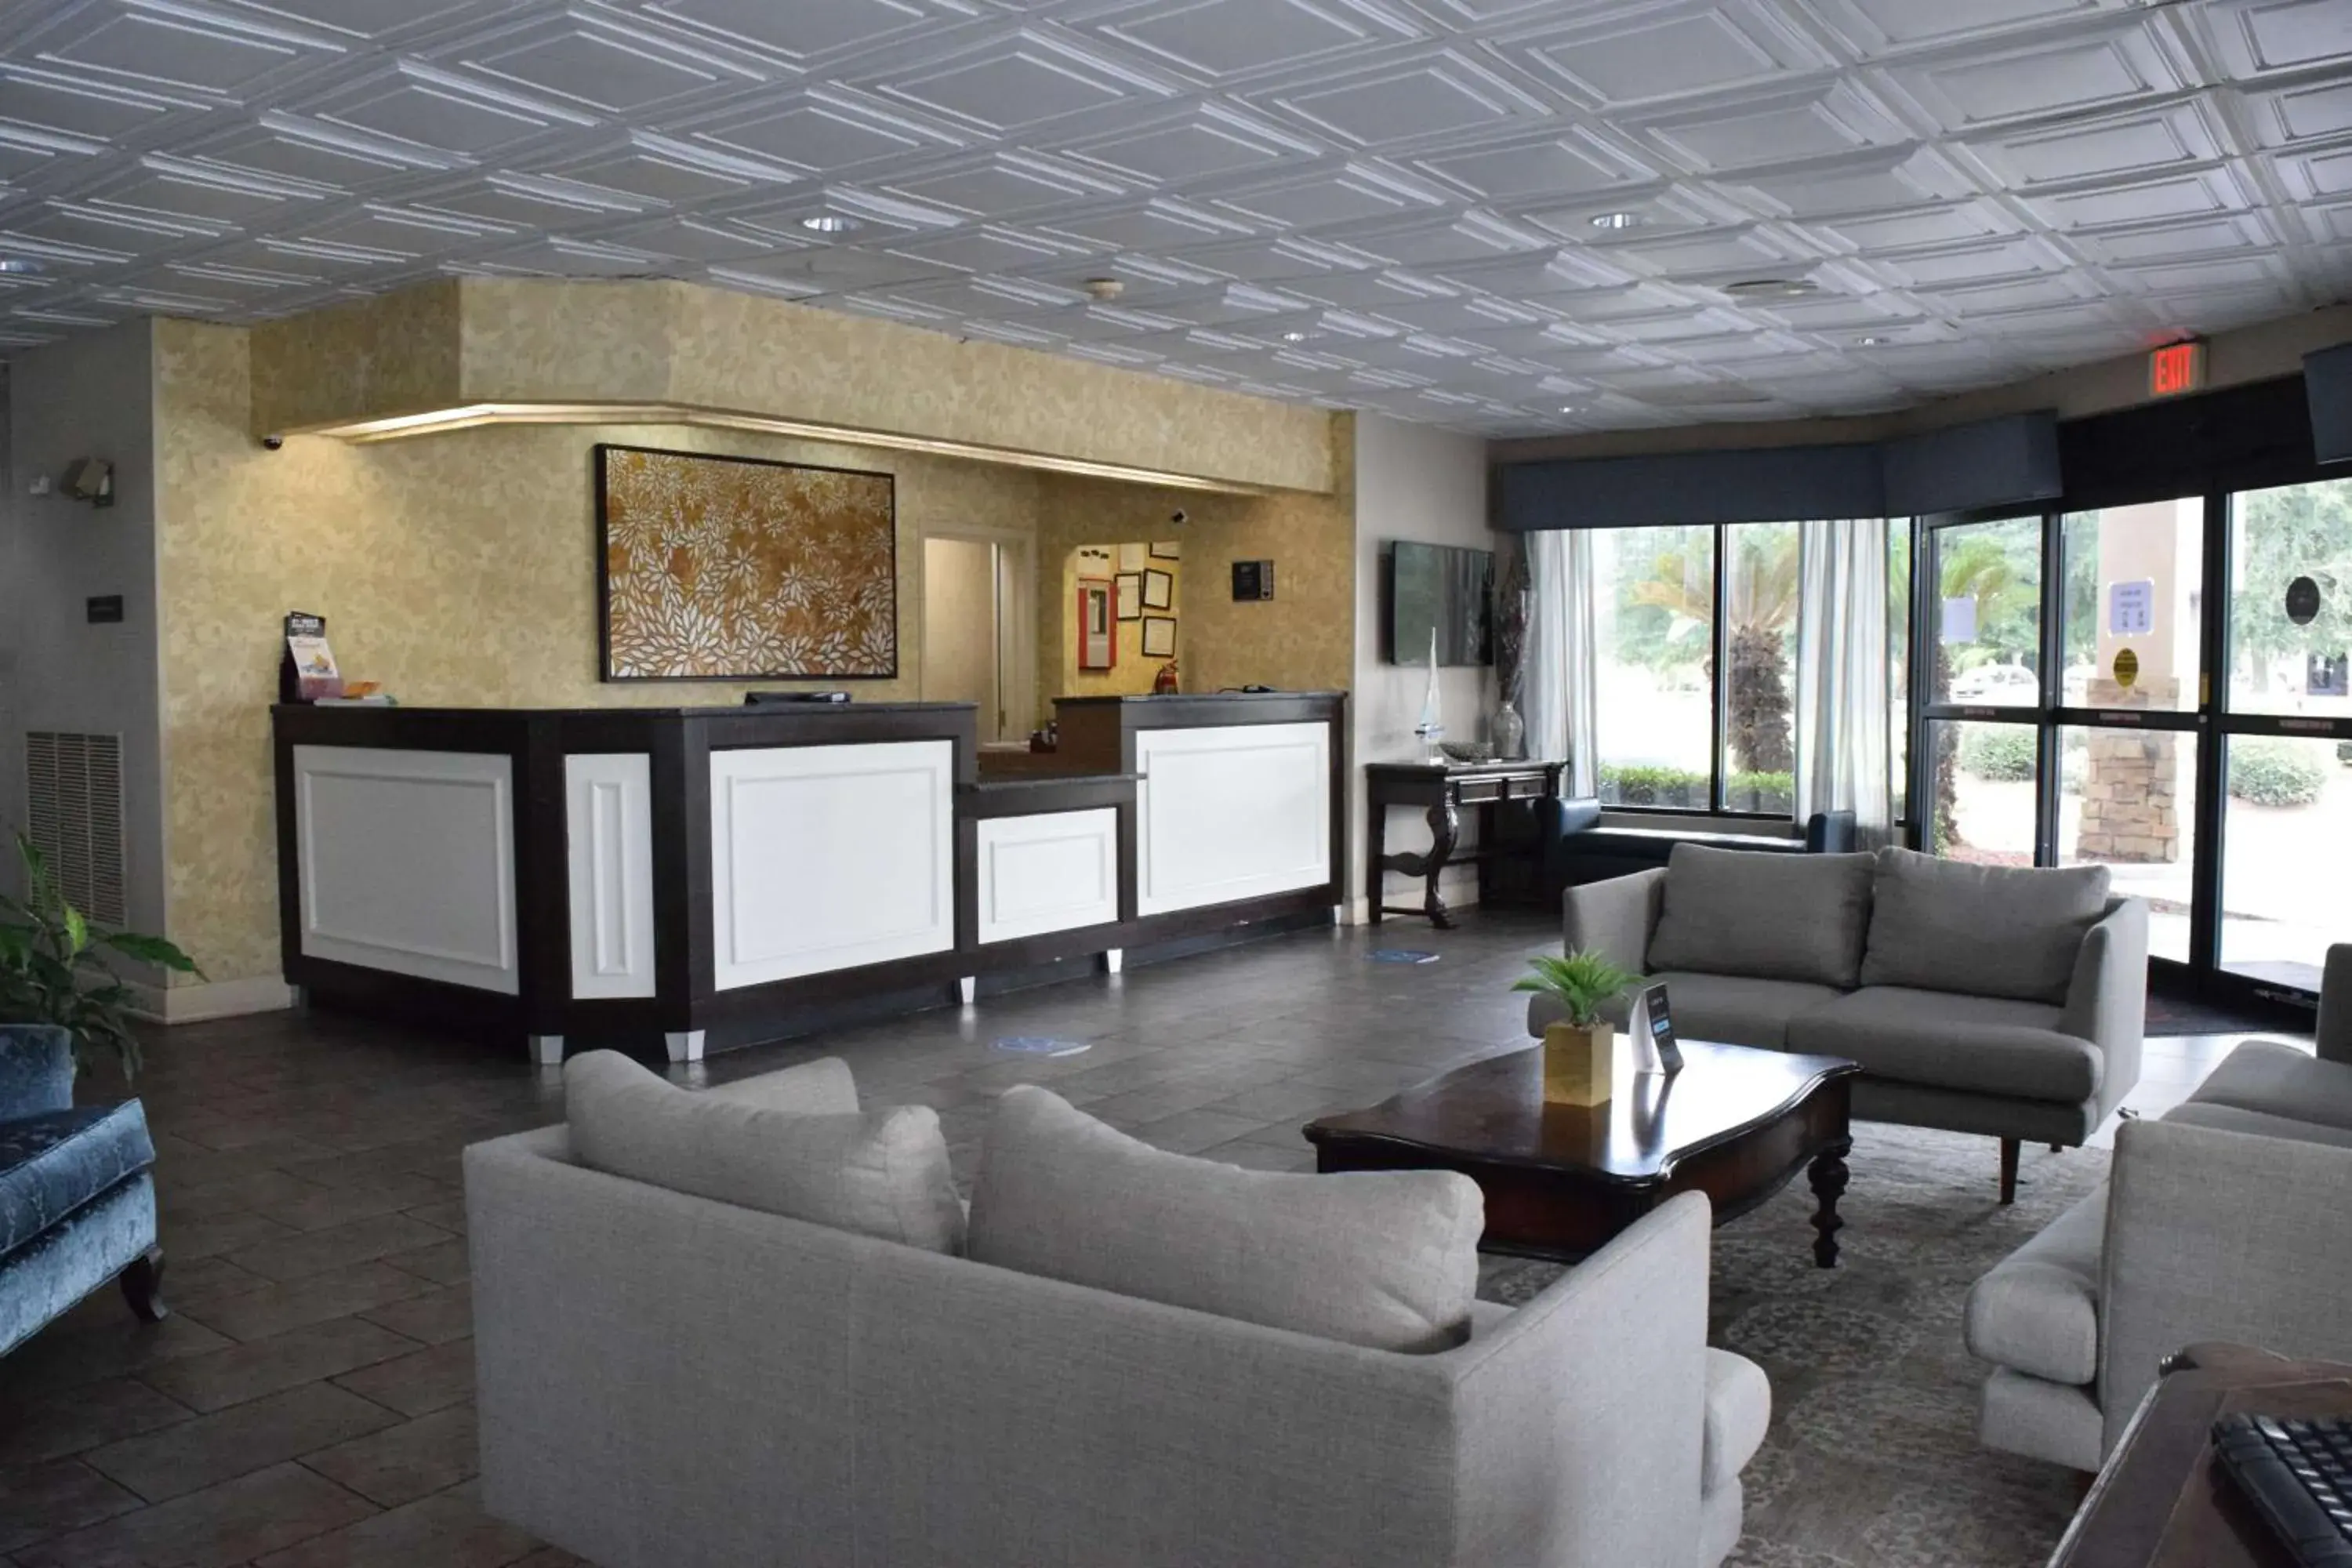 Lobby or reception, Lobby/Reception in Ramada by Wyndham Savannah Gateway